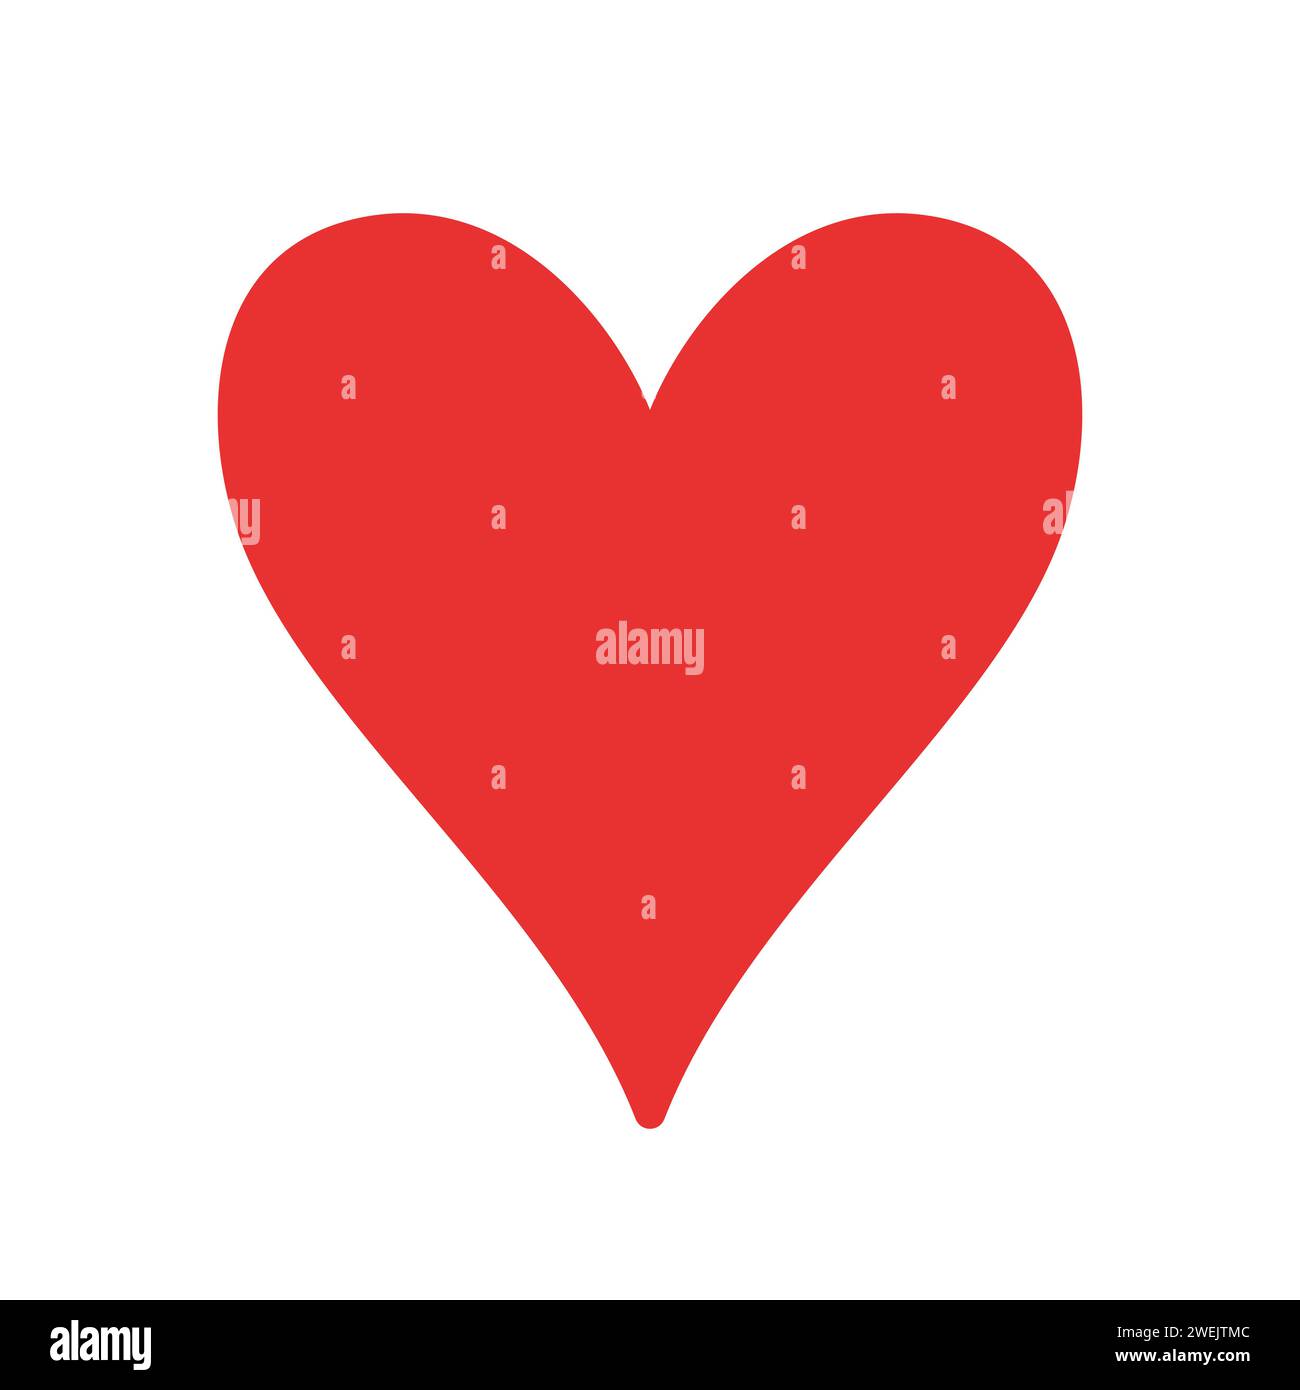 Rotes Herzsymbol. Vektorabbildung in abgewickelter Form. Valentinstag-Symbol. Liebes-Symbol. Handgezeichnetes Herz im Doodle-Stil. Love-Konzept. Stock Vektor